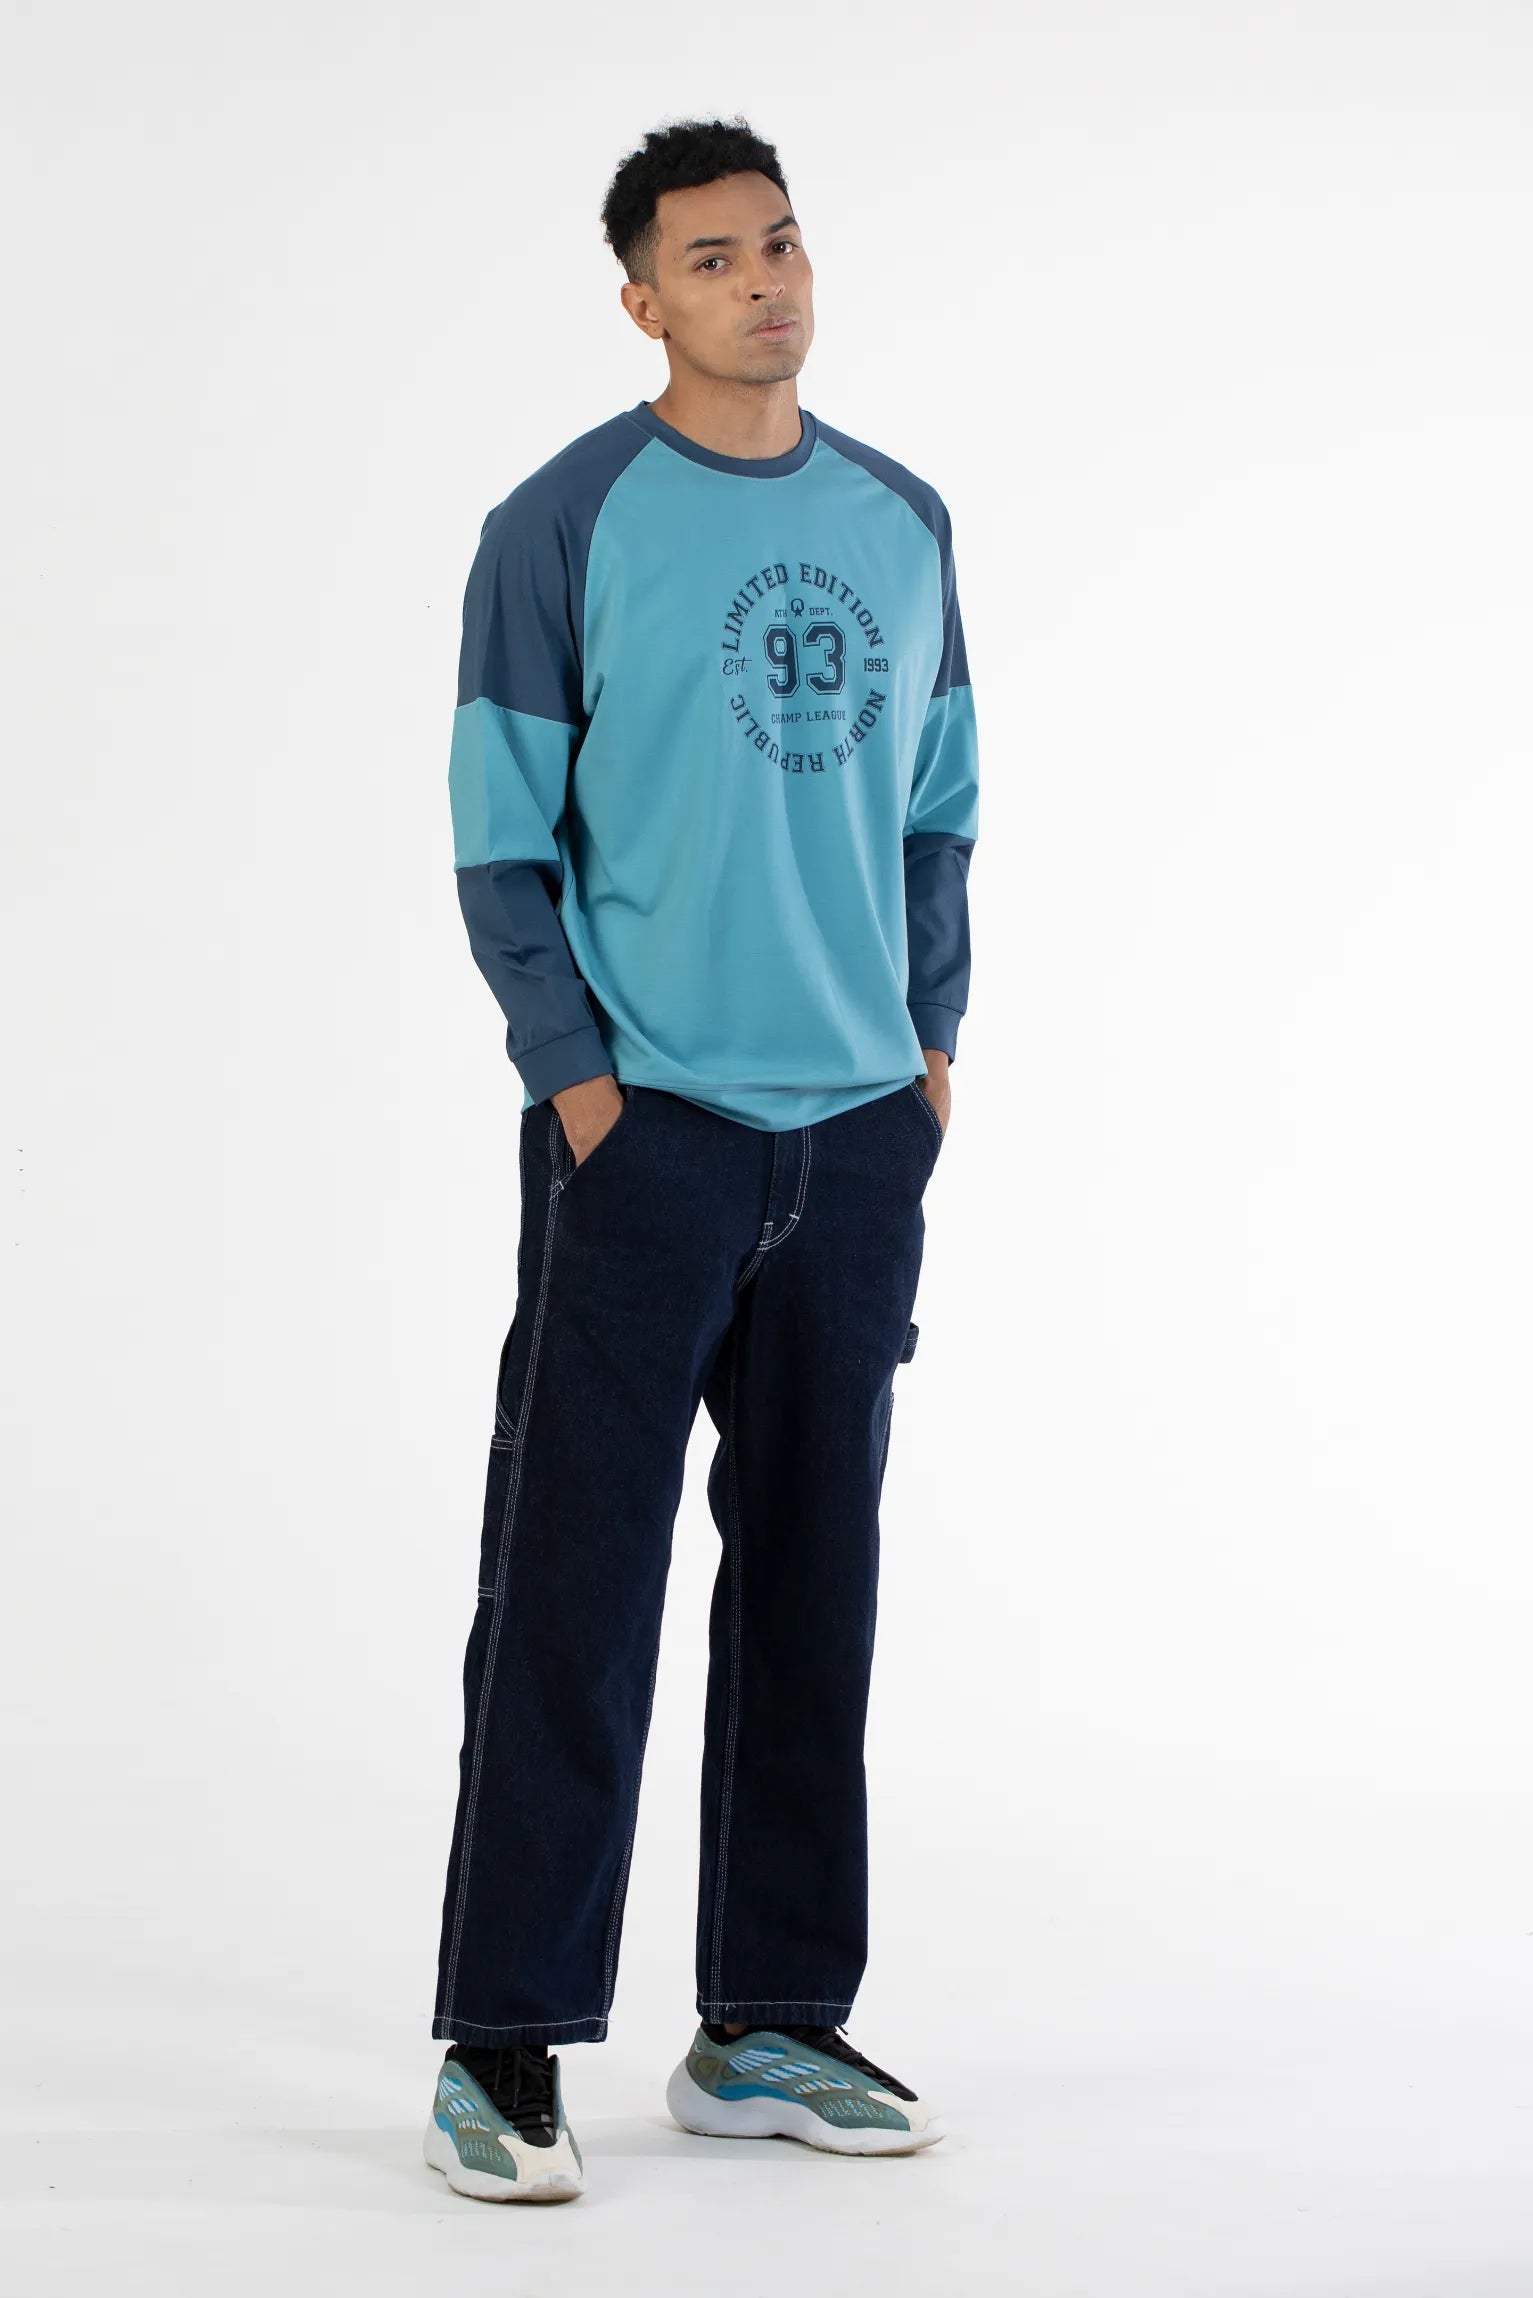 Sea Blue Teal Raglan Sleeve Graphic Printed Men's Sweatshirt